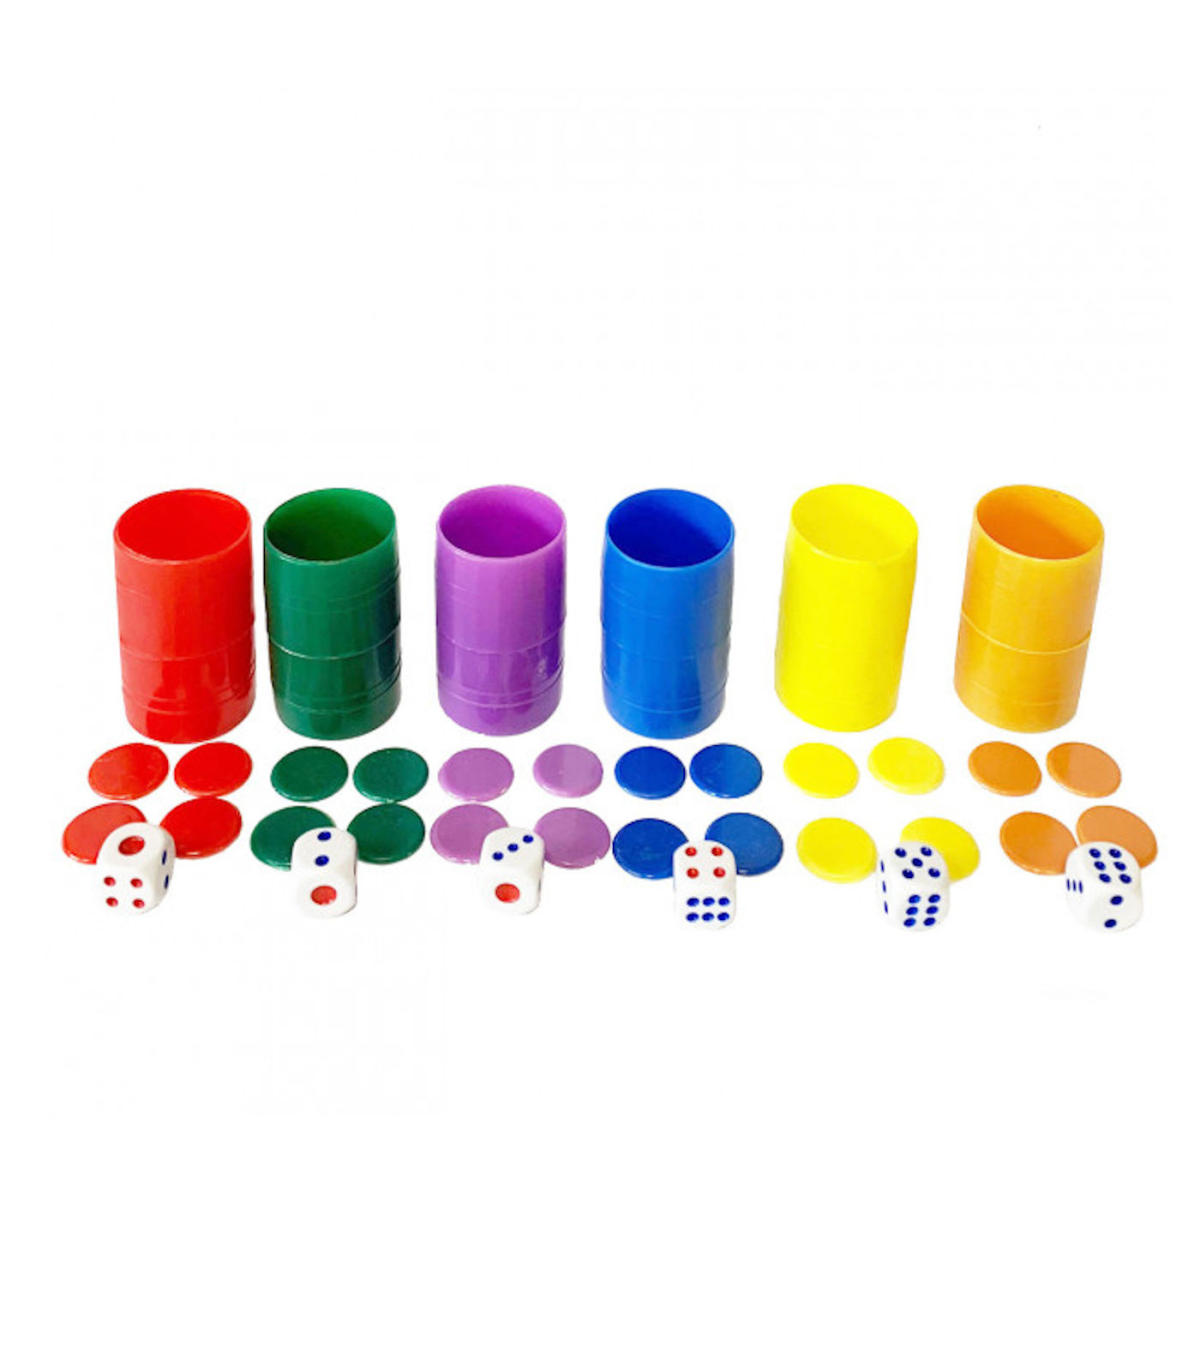 Set completo de 6 cubiletes de plástico, parchis, juego de mesa,  multicolor, fichas, dados, cubiletes dimensiones 4.5 x 2.5 cm.